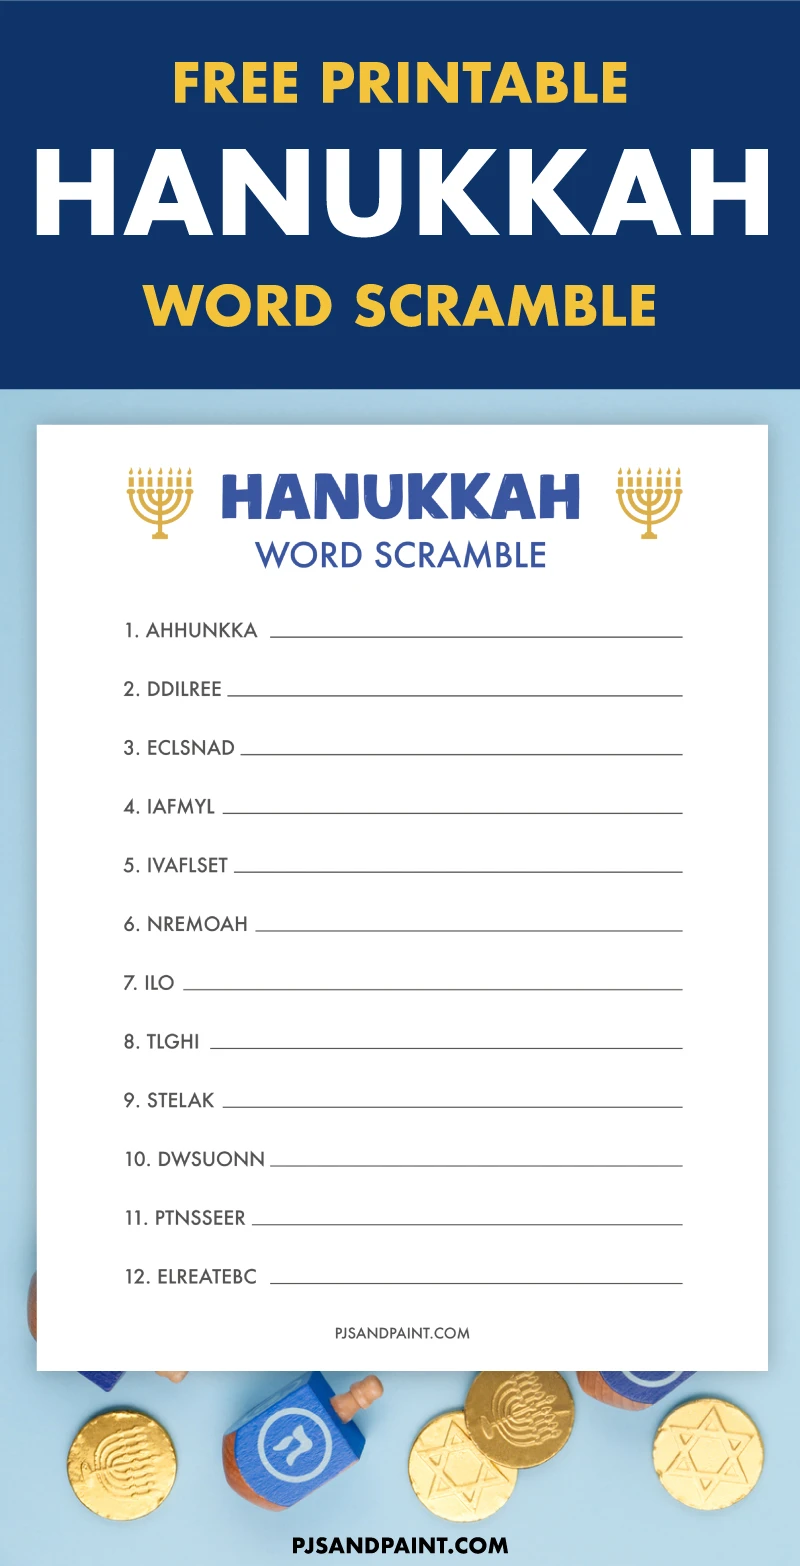 free-printable-hanukkah-word-scramble.jpg.webp